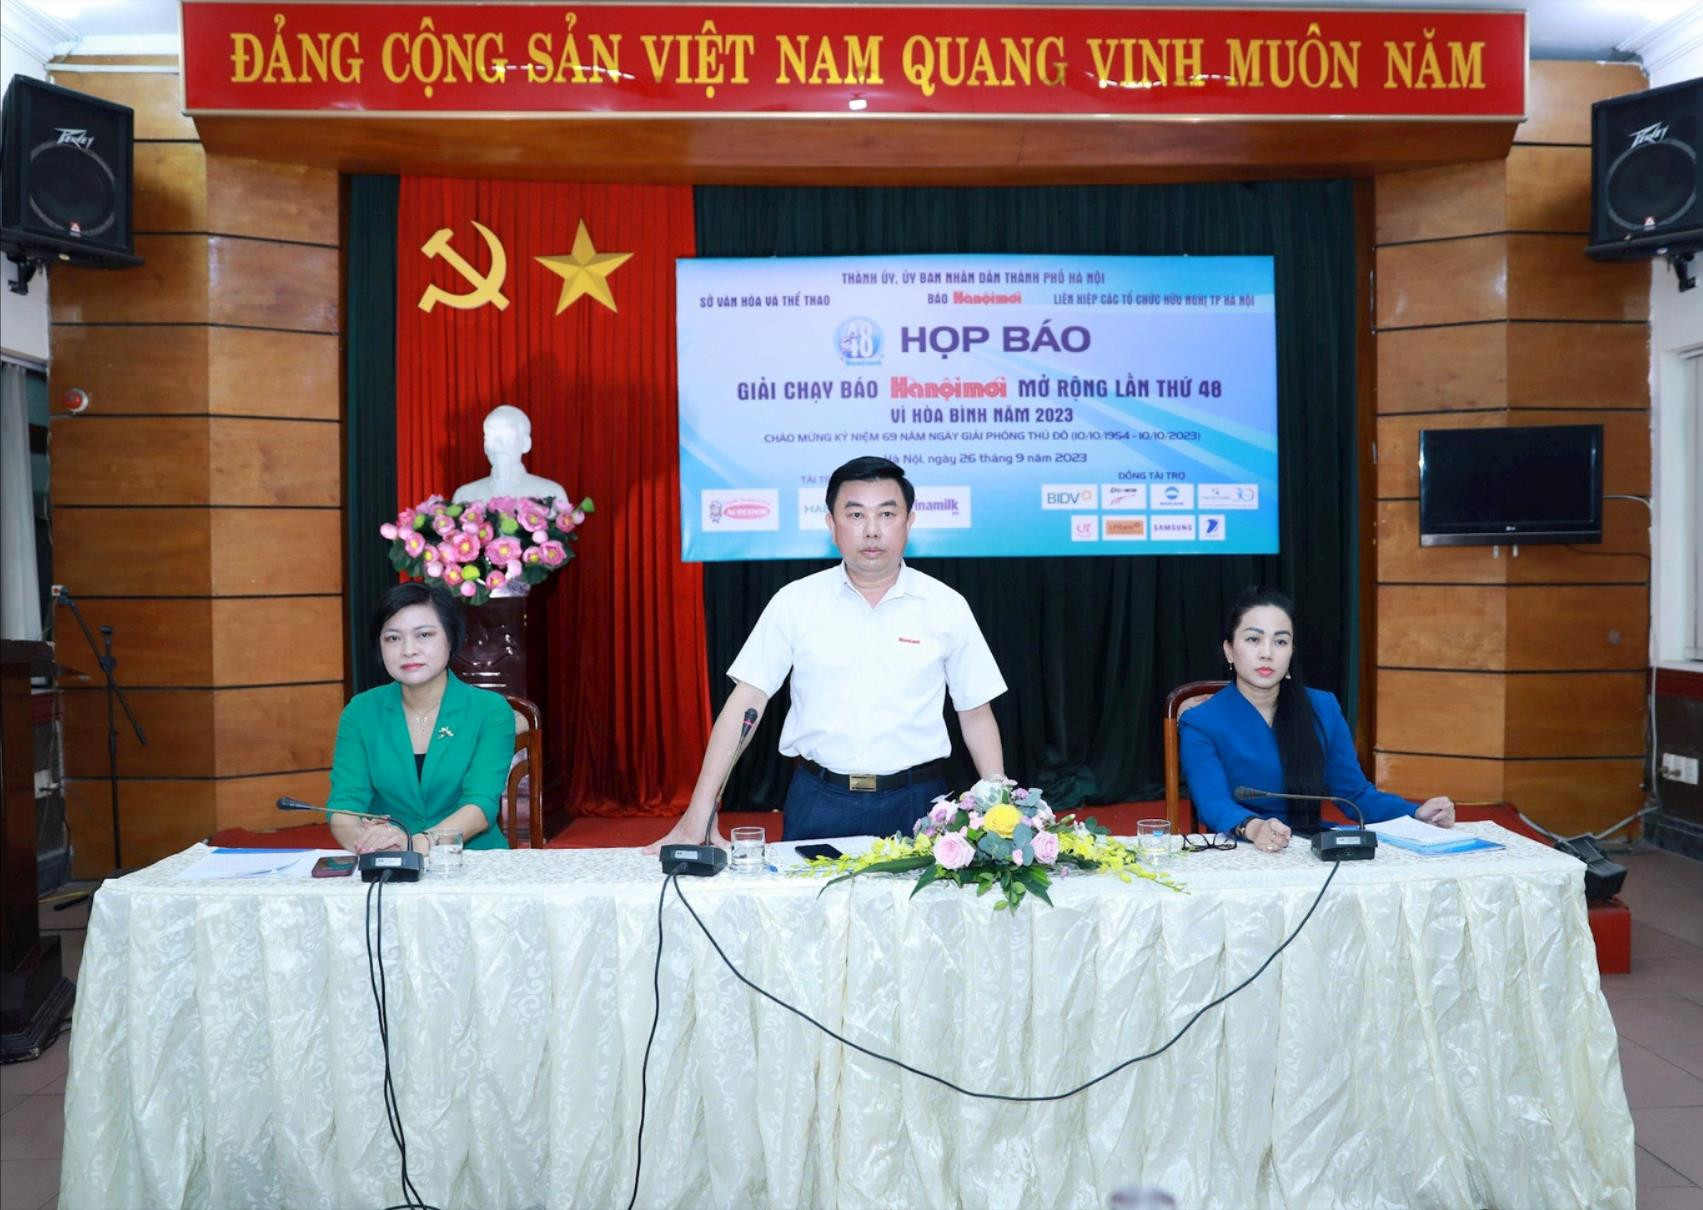 Tổng Biên tập Báo Hànộimới Nguyễn Minh Đức phát biểu khai mạc họp báo.